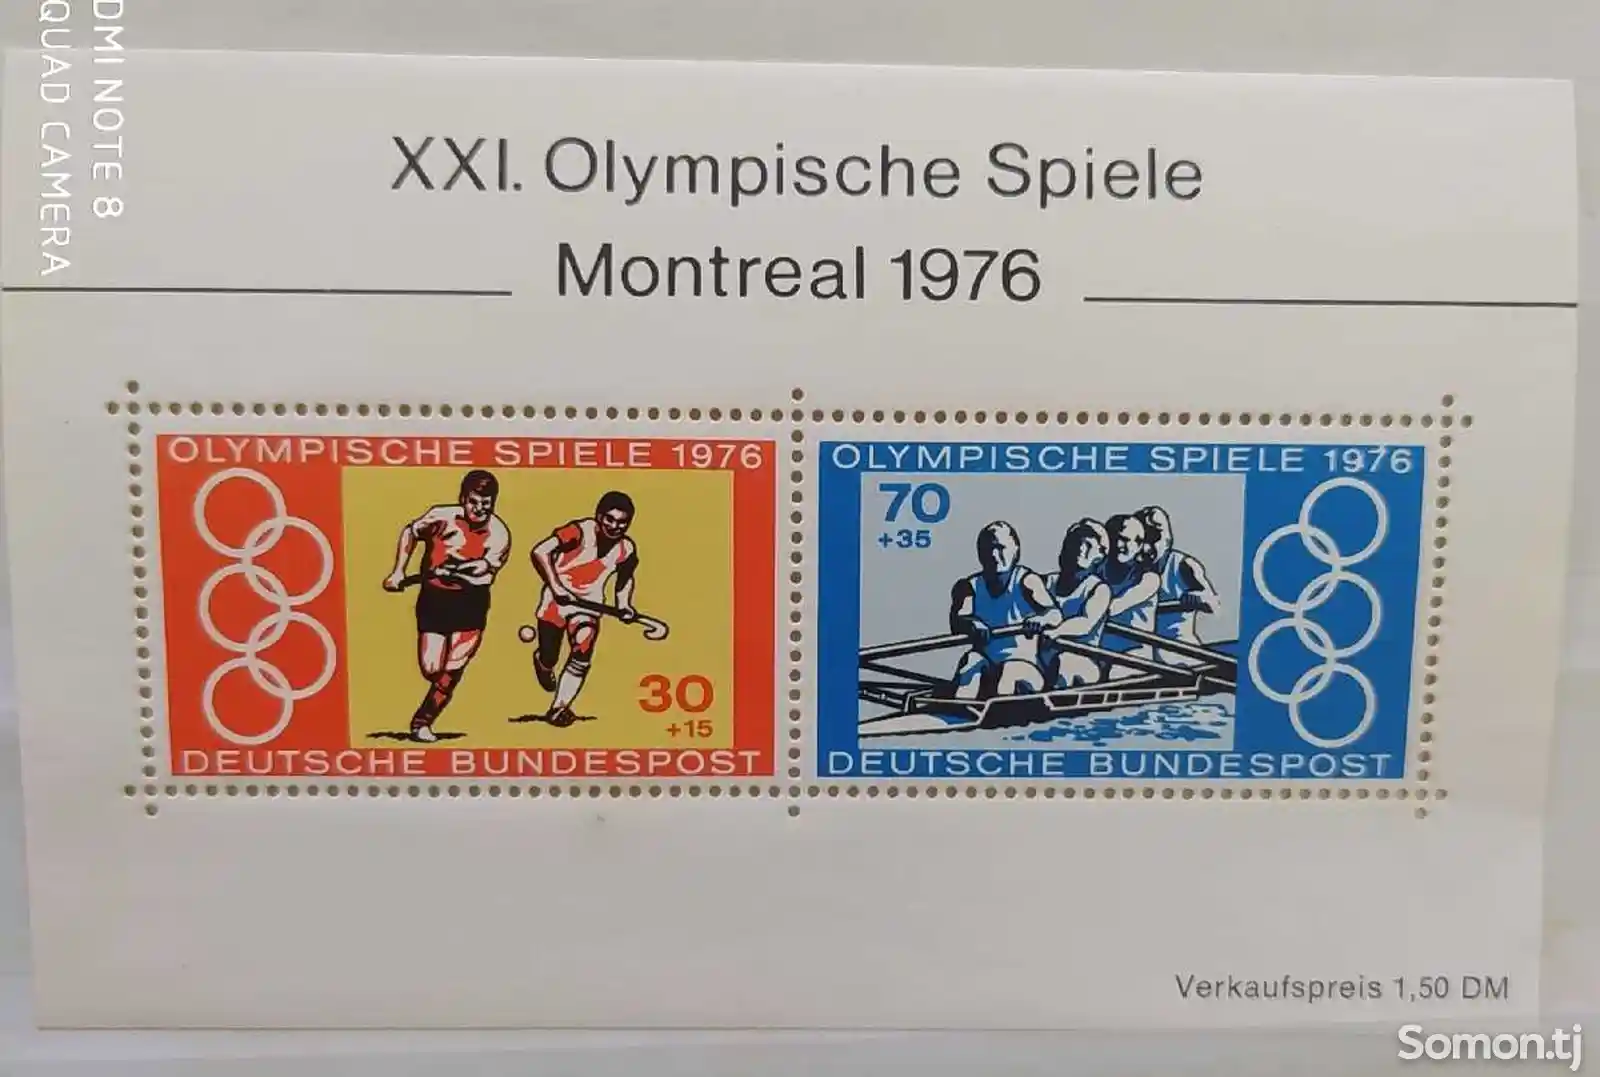 Марки Олимпийской игры Монреал 1976